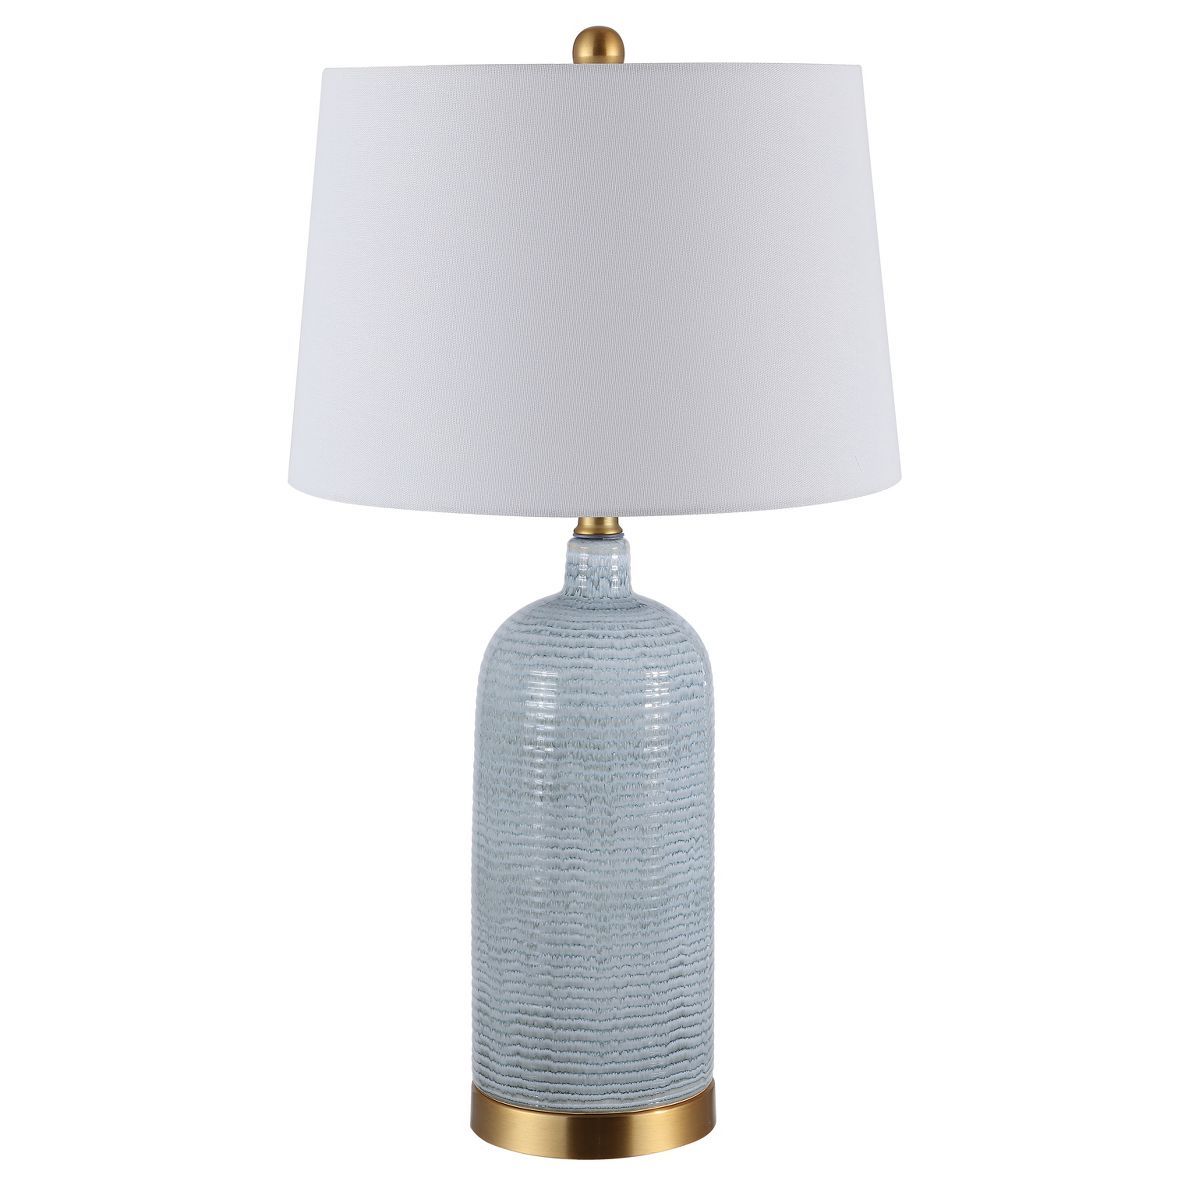 Stark Glass Table Lamp - Blue - Safavieh | Target